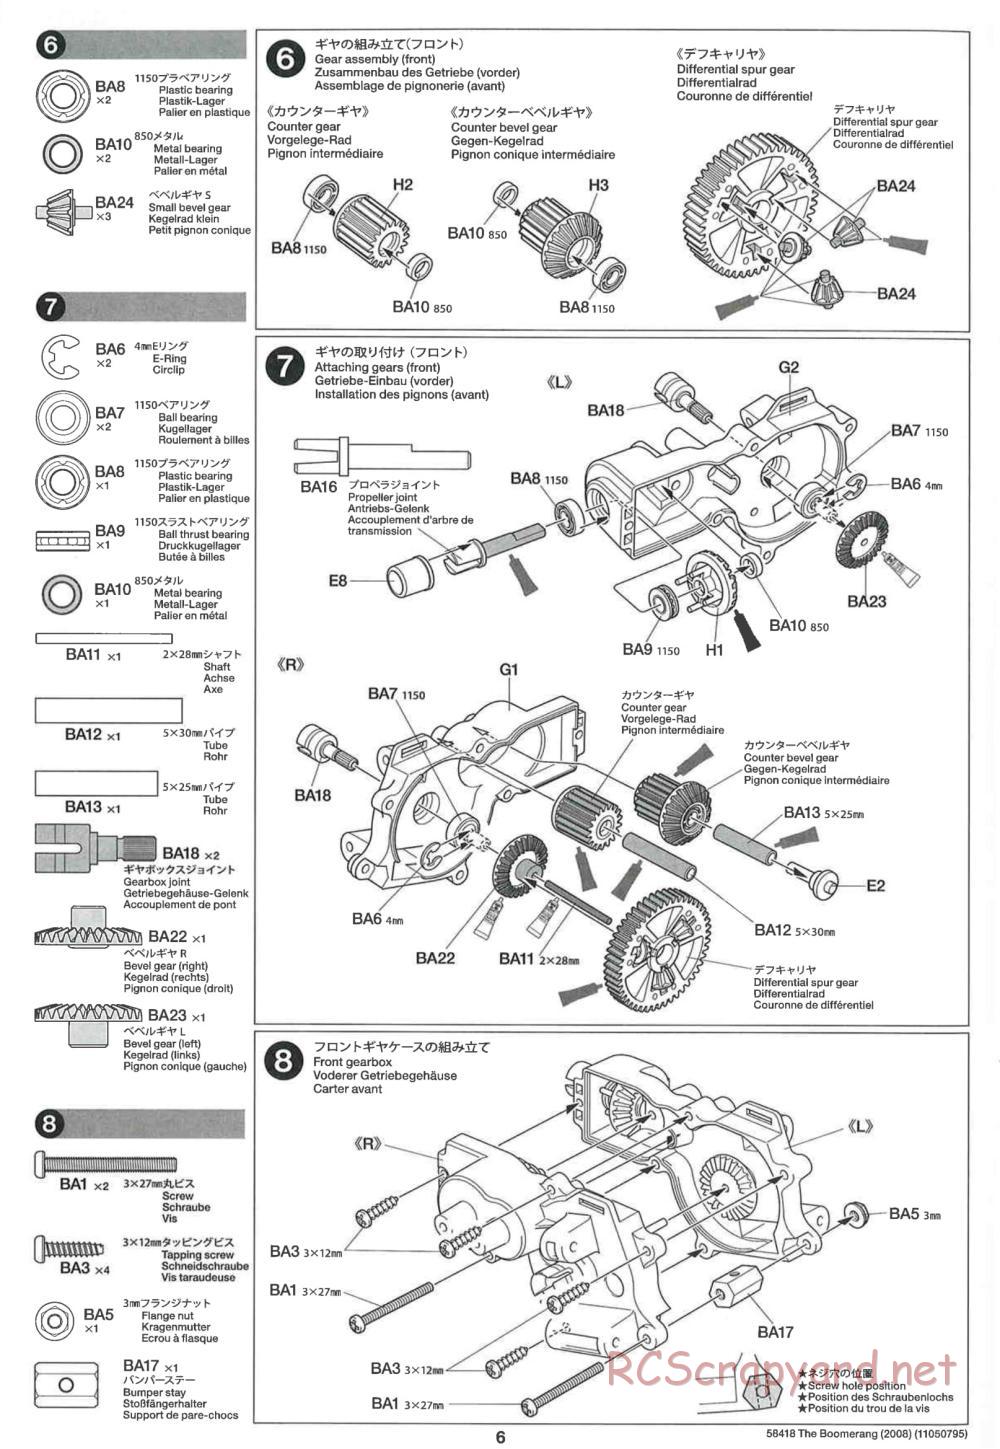 Tamiya - The Boomerang 2008 Chassis - Manual - Page 6